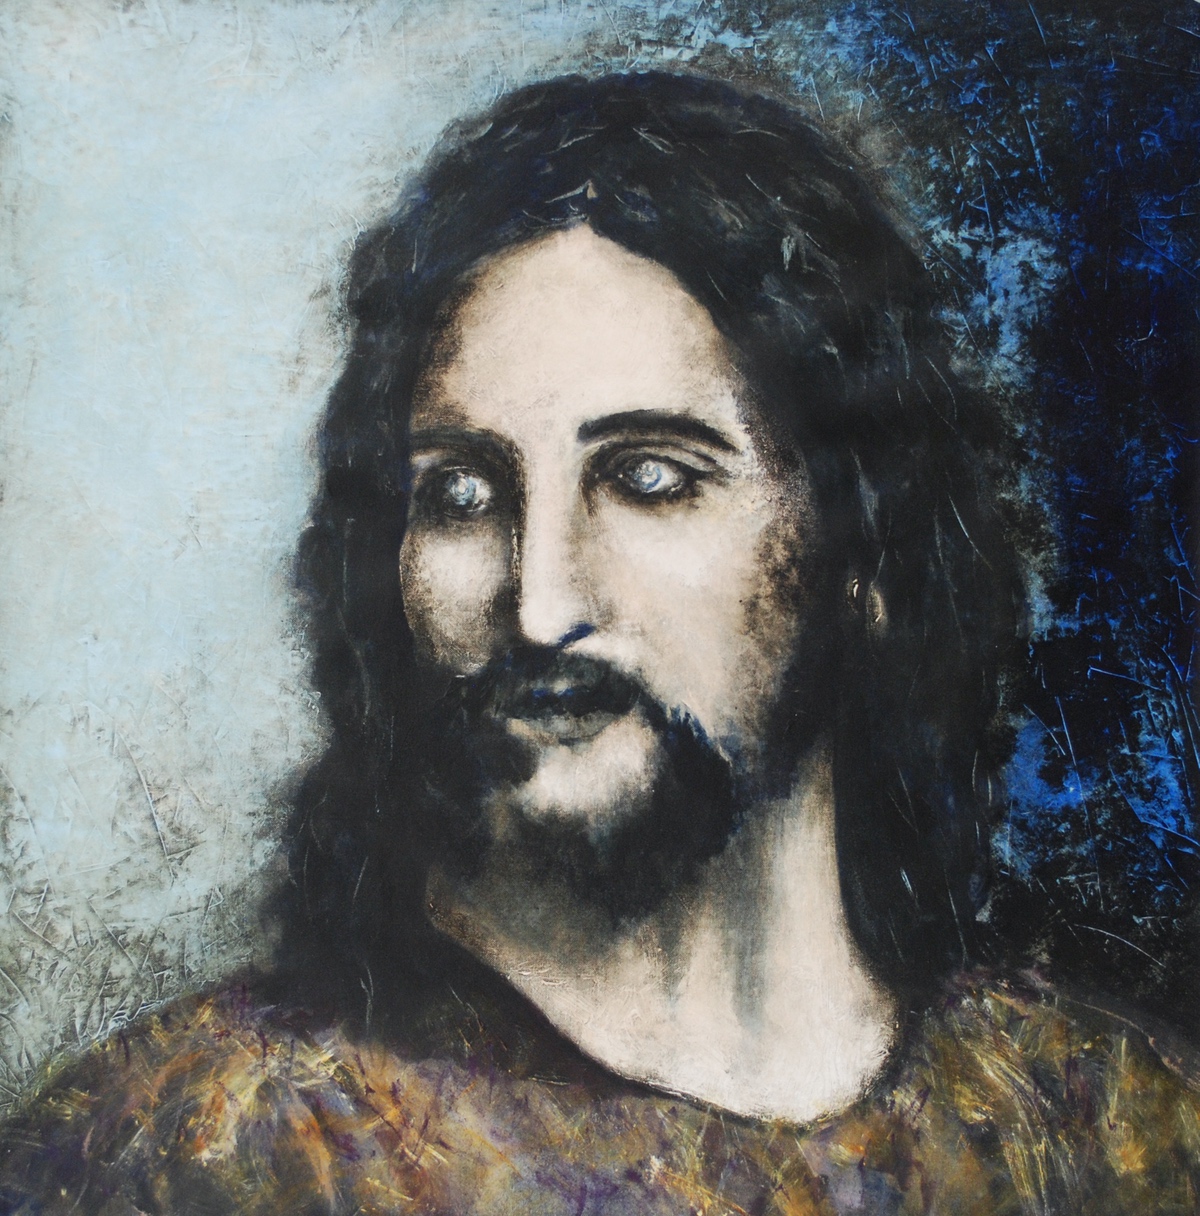 “Jesus – vender tilbage fra forklarelsens bjerg“, 2014, 69 x 69 cm. Akryl på lærred. (Carsten Frank nr. 1649) Privat